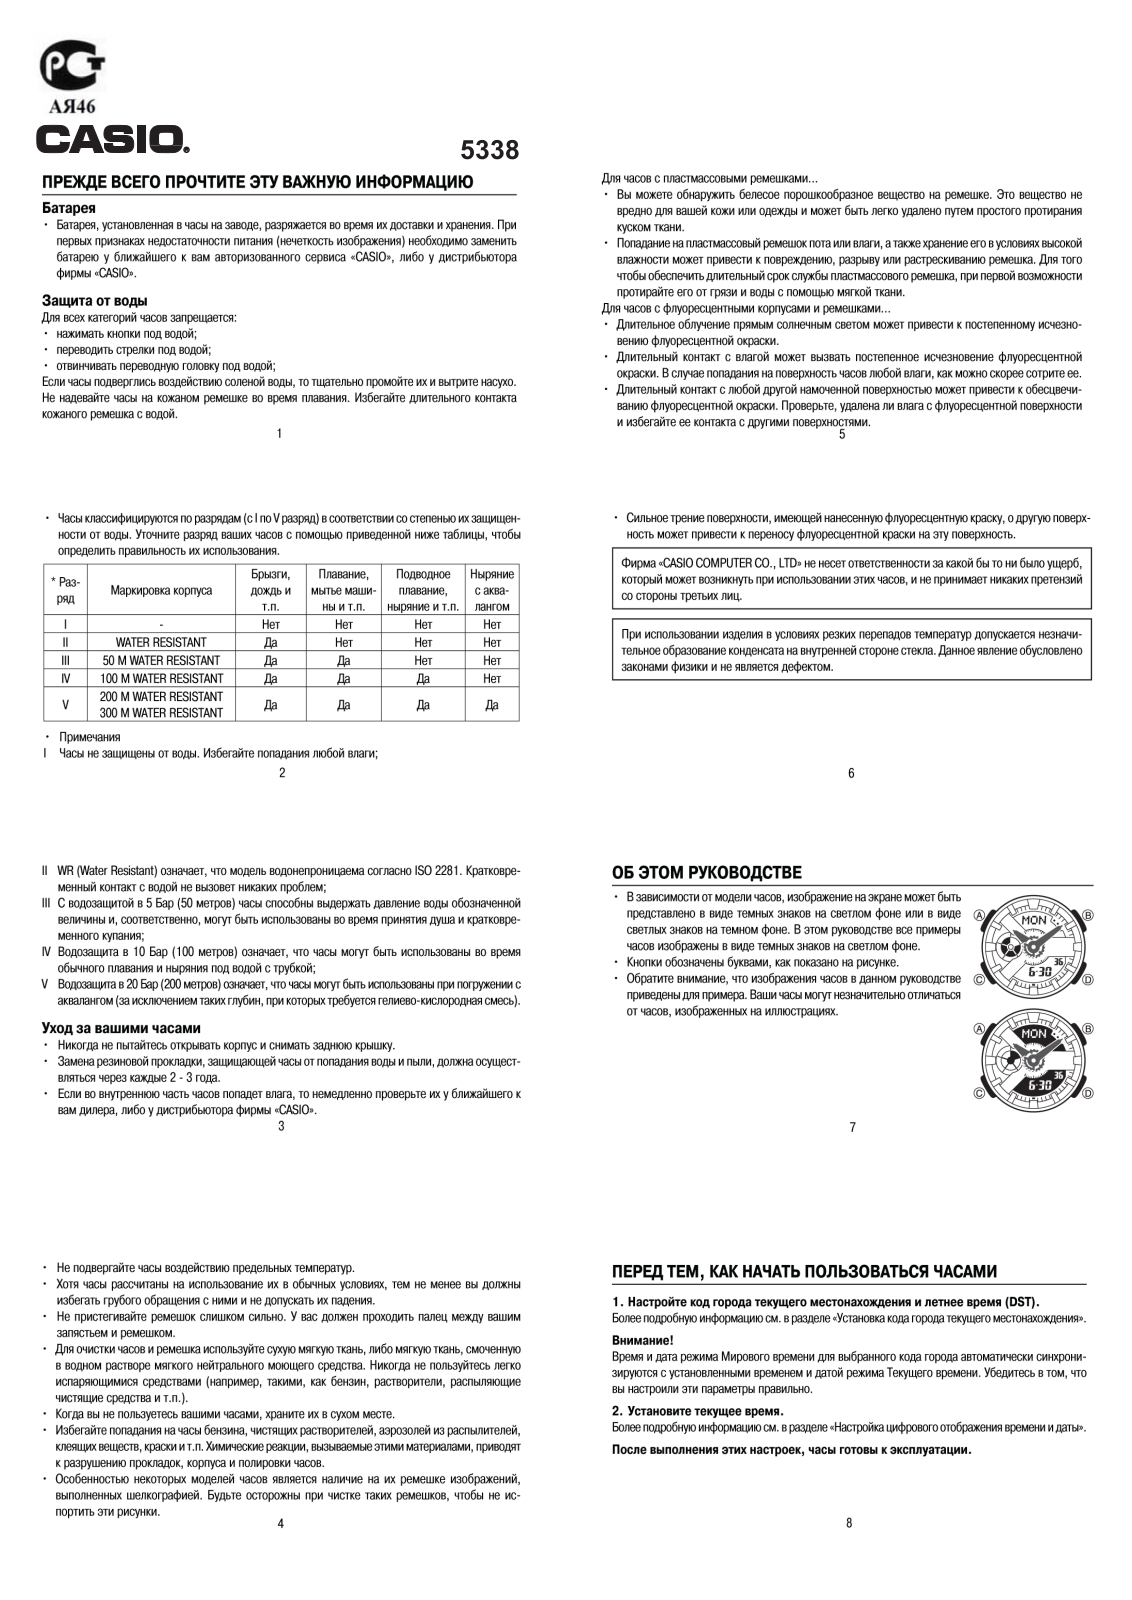 Casio BA-110DC-2A3 User Manual